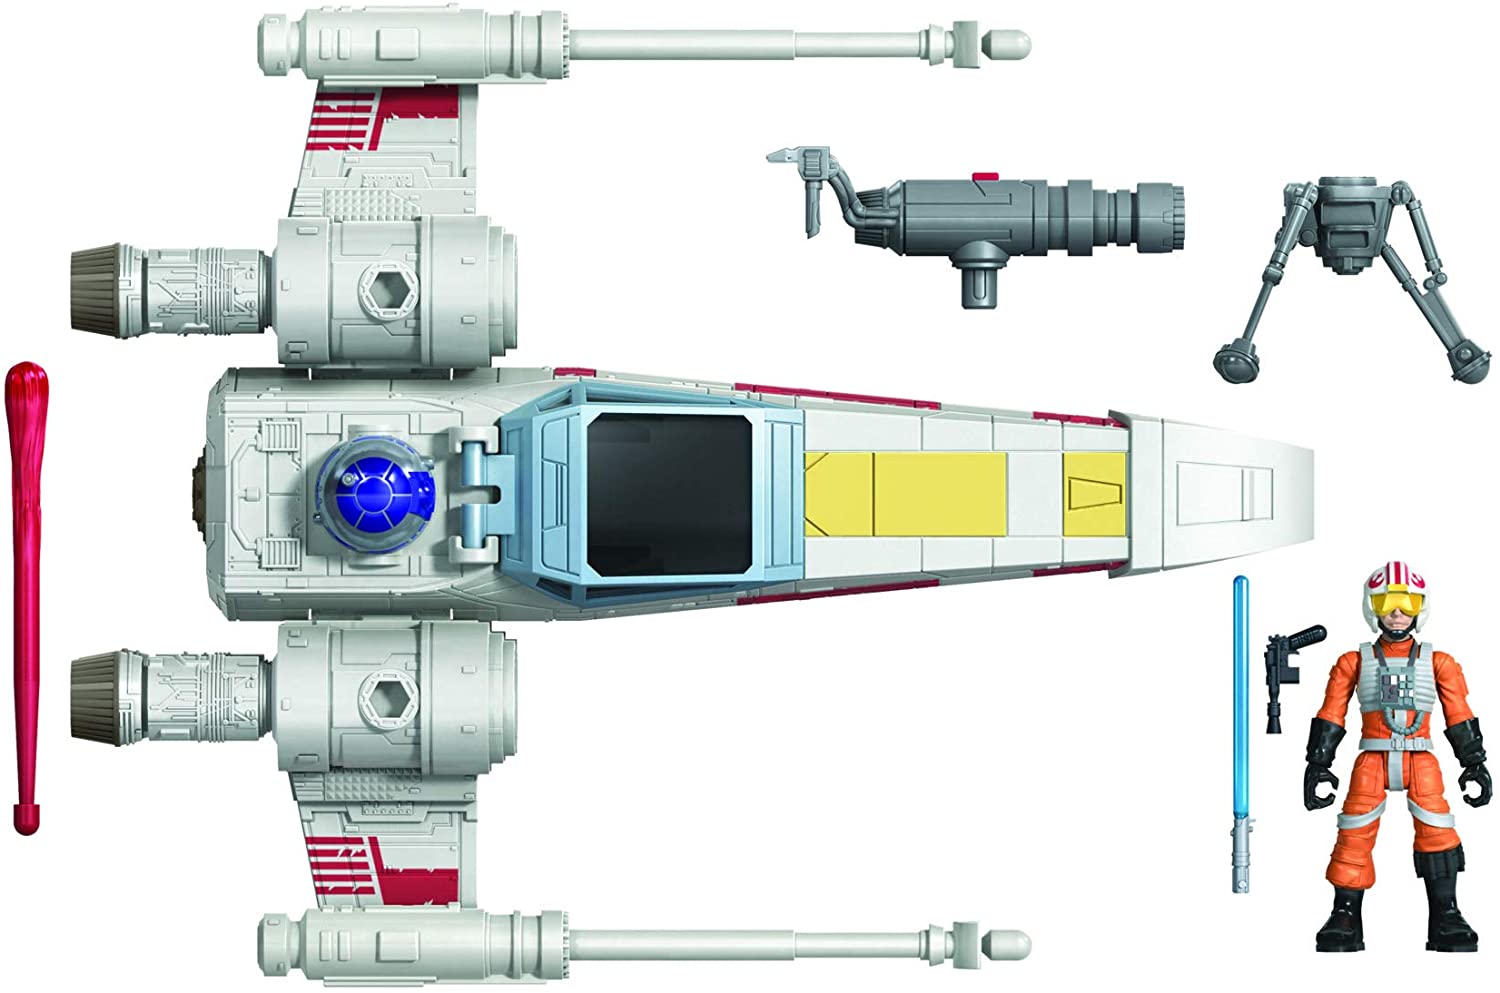 Star Wars Mission Fleet Stellar Class Luke Skywalker X-Wing Fighter 2.5-Inch-Scale Figure and Vehicle